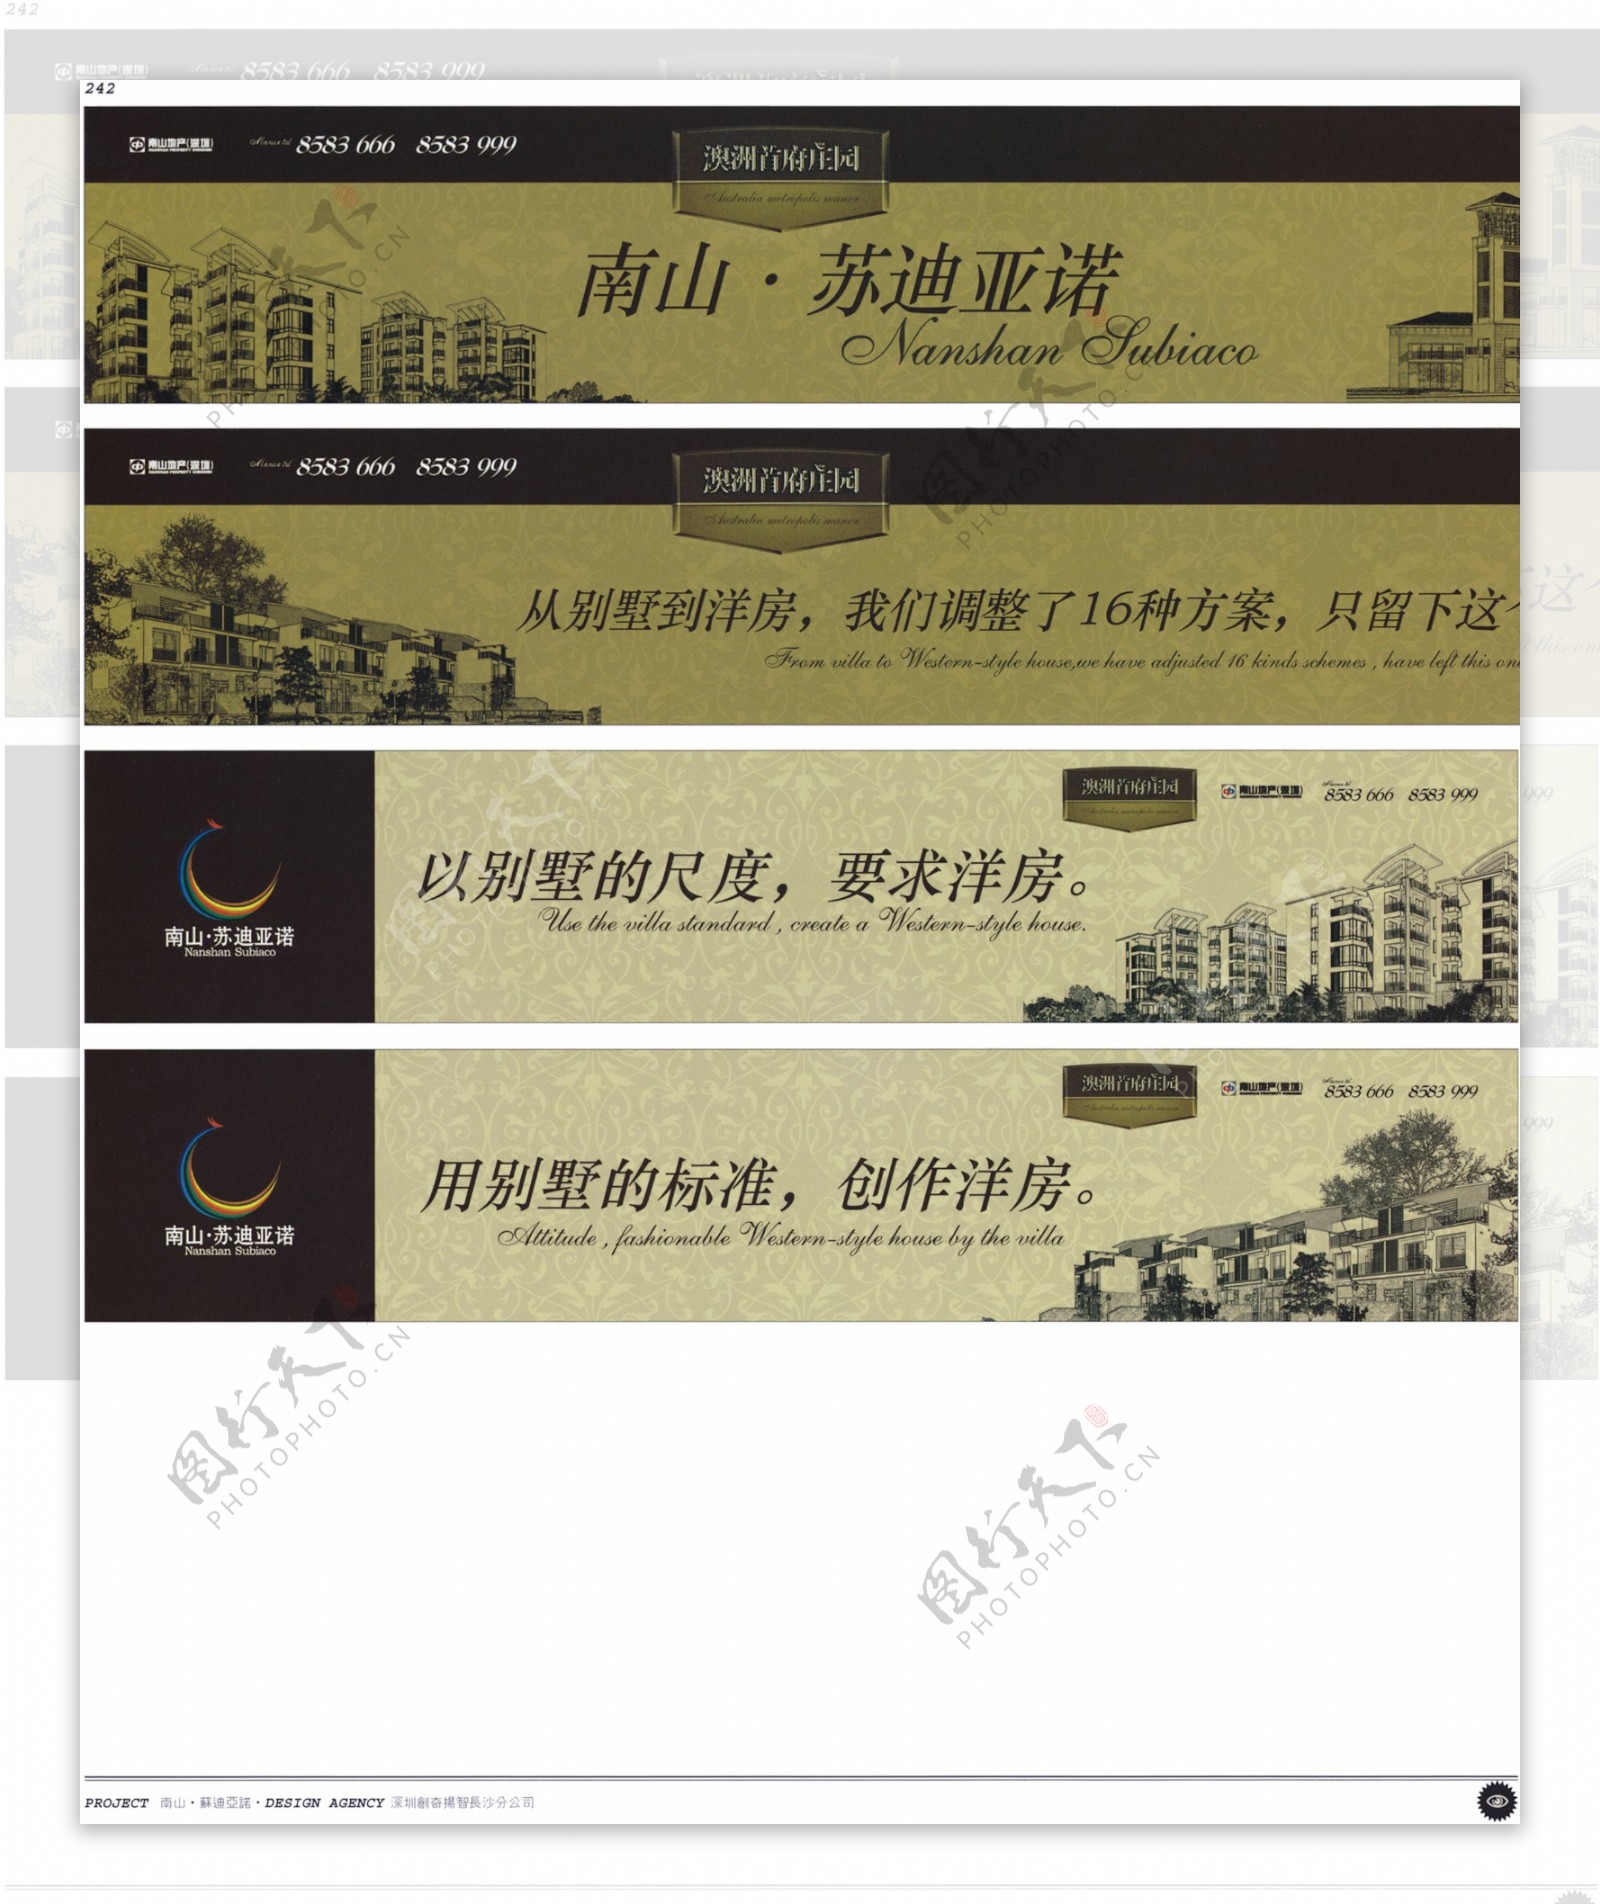 中国房地产广告年鉴第二册创意设计0237